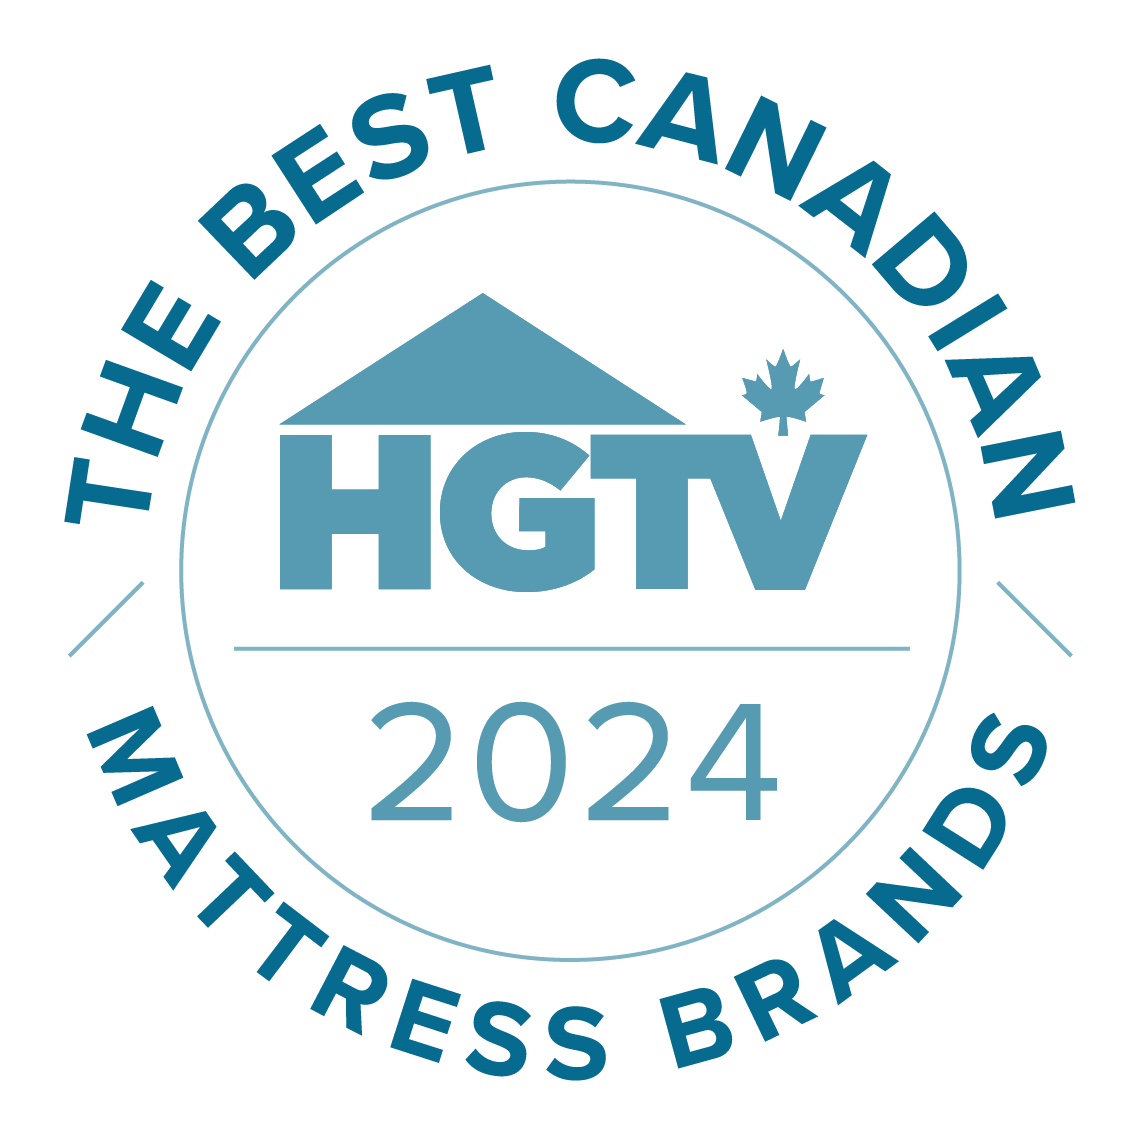 HGTV - The Best Canadian Mattress Brands 2024